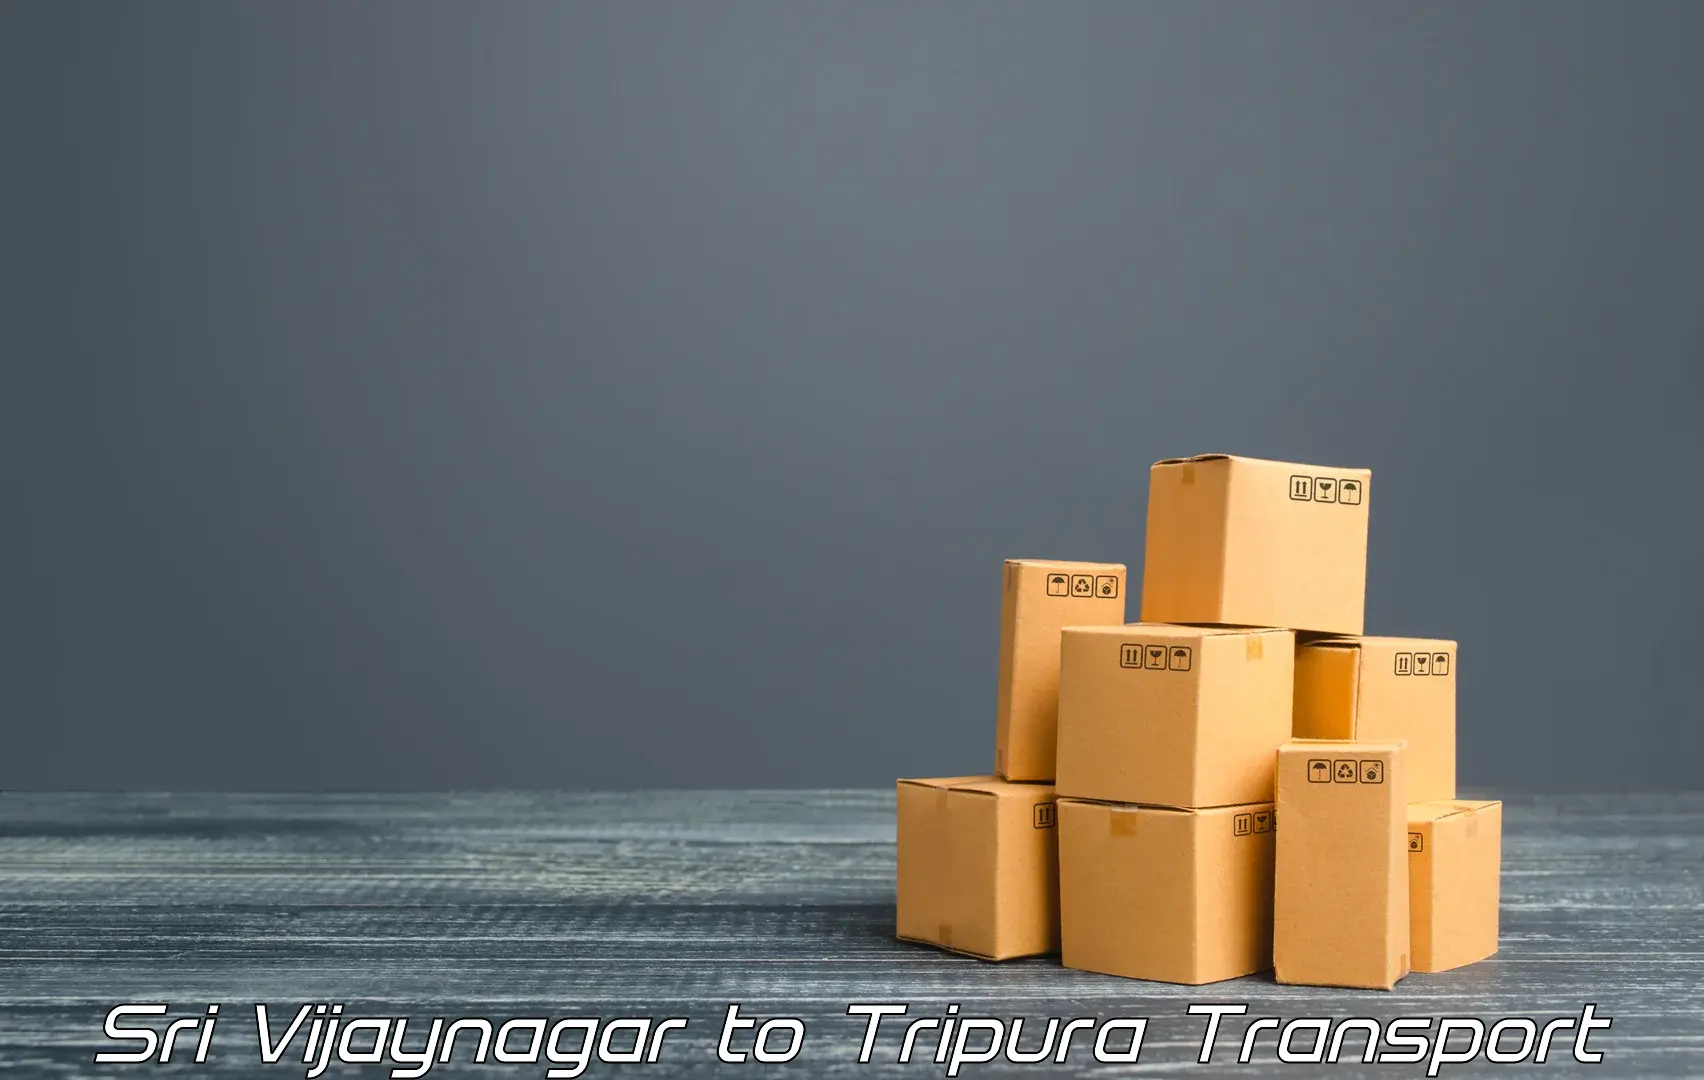 Commercial transport service Sri Vijaynagar to Bishalgarh